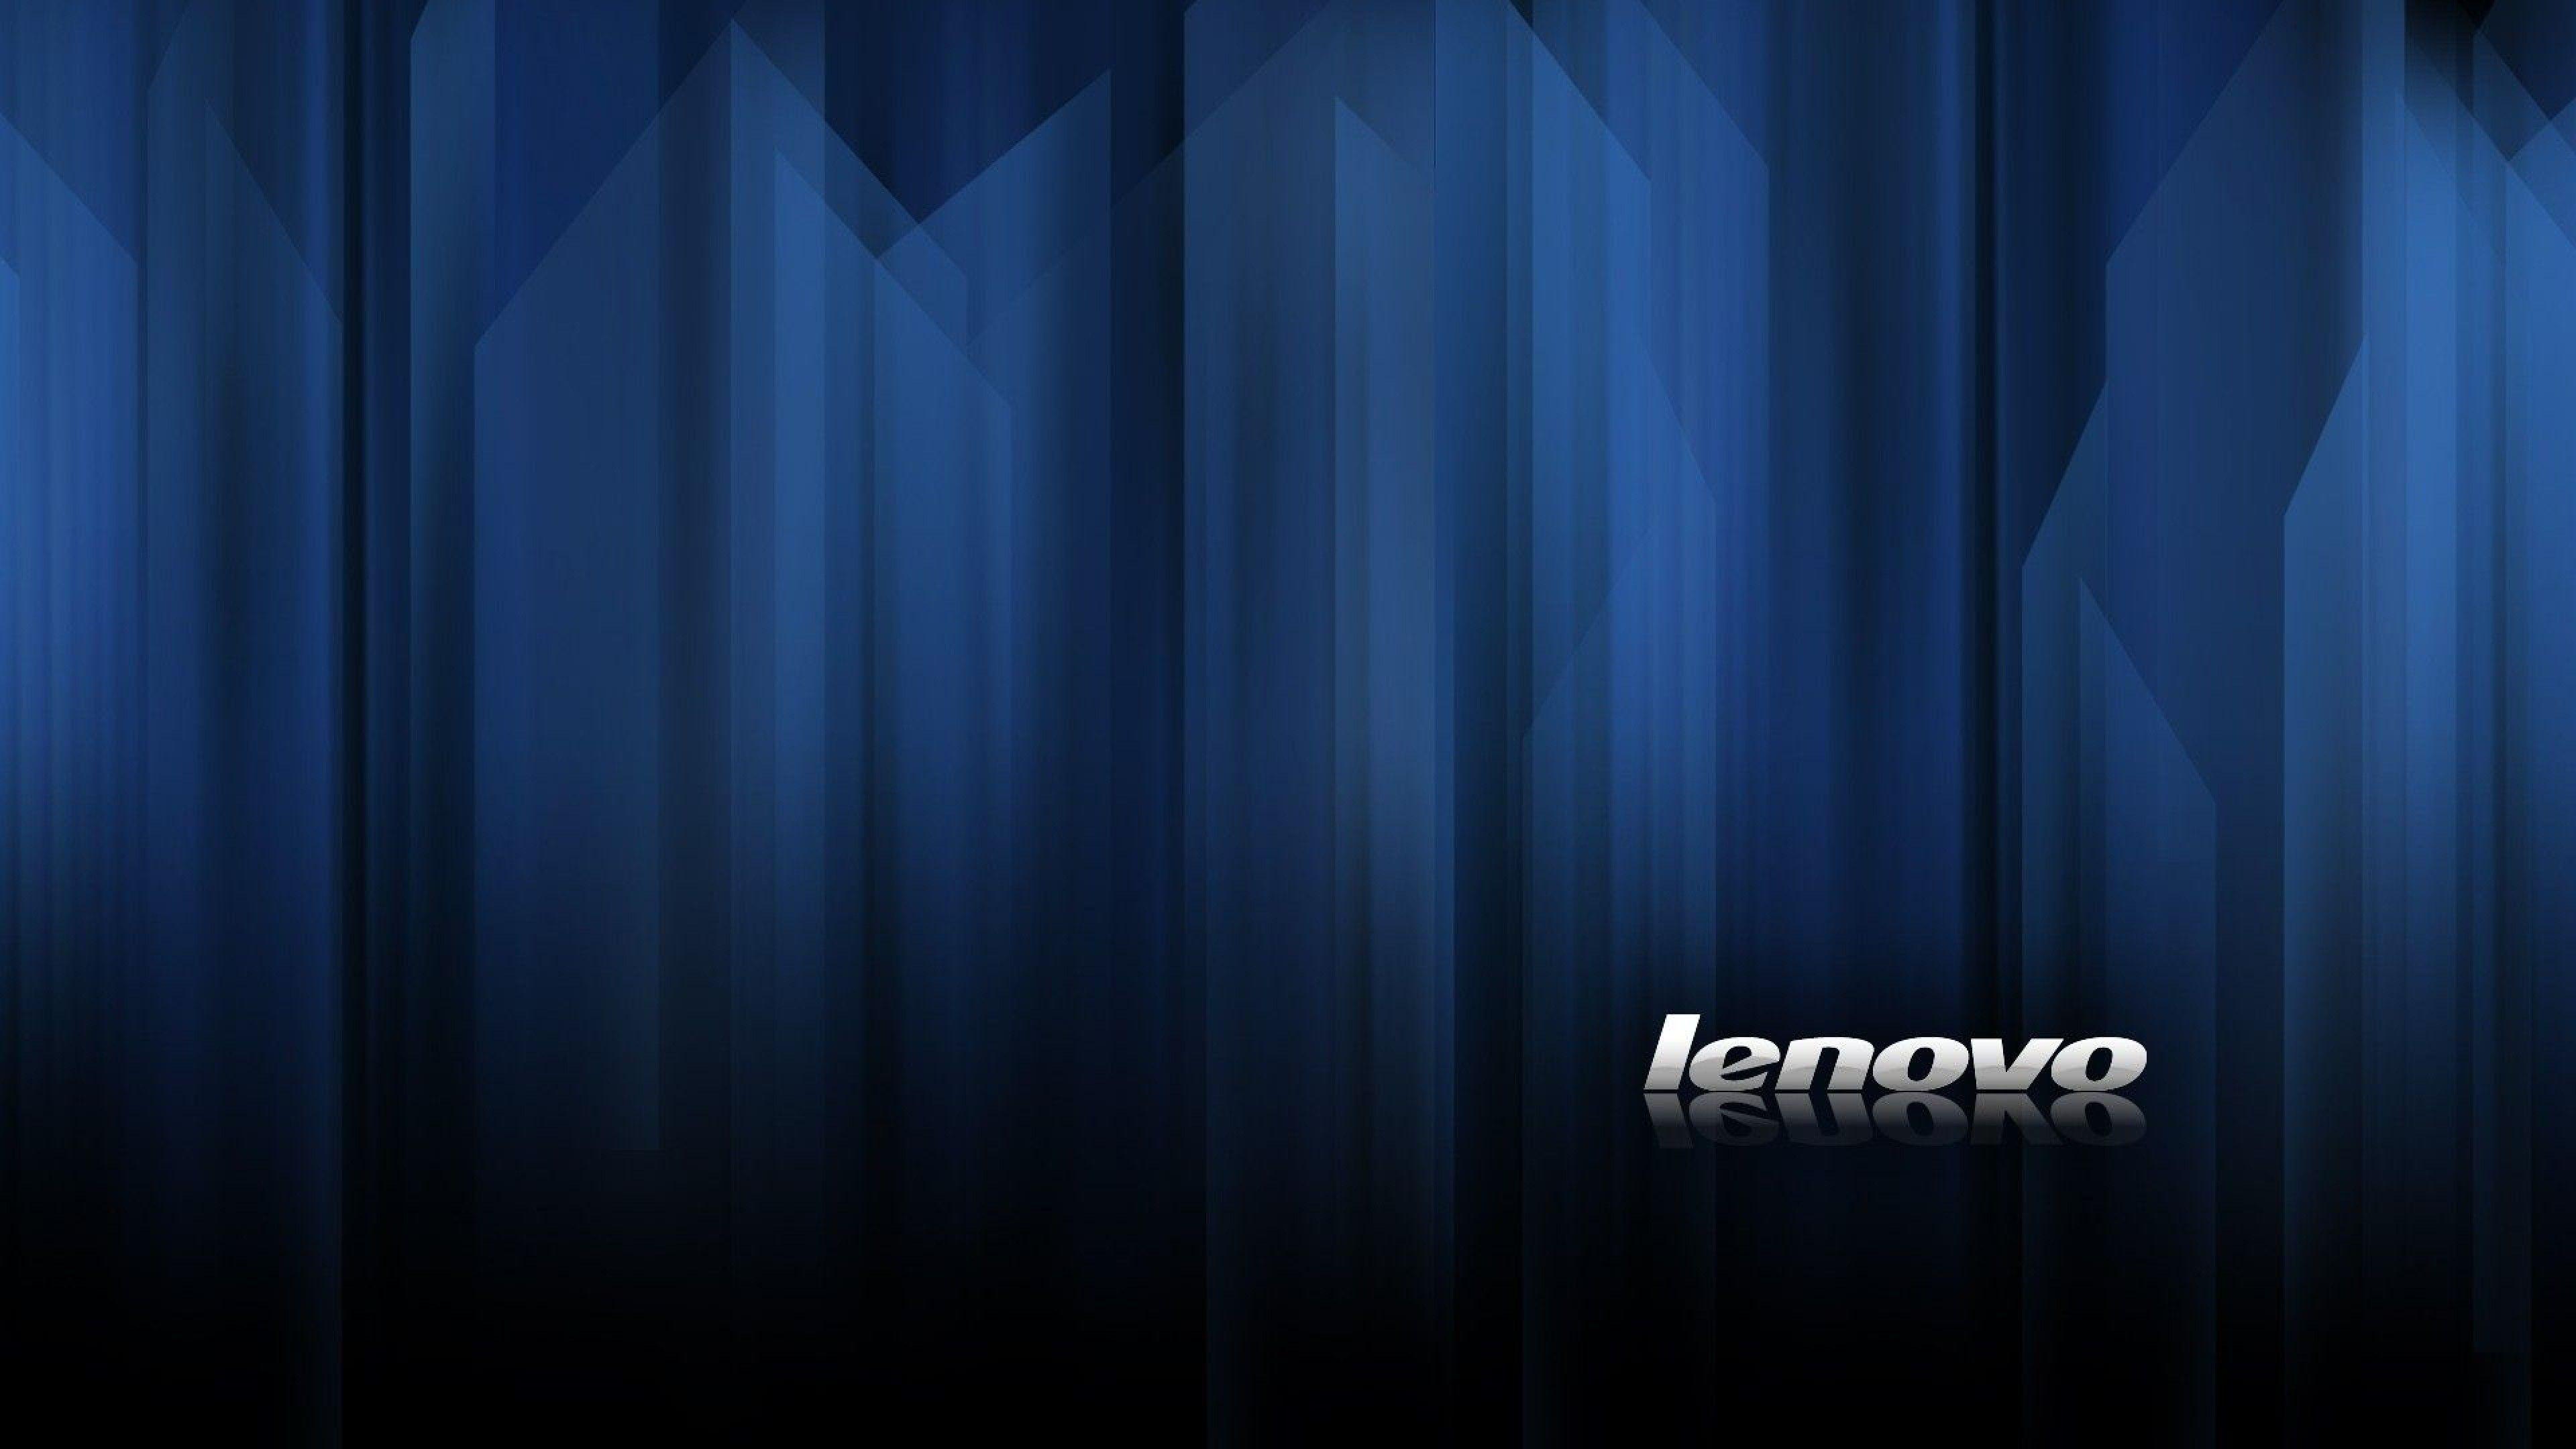 Lenovo 4K Wallpaper Free Lenovo 4K Background